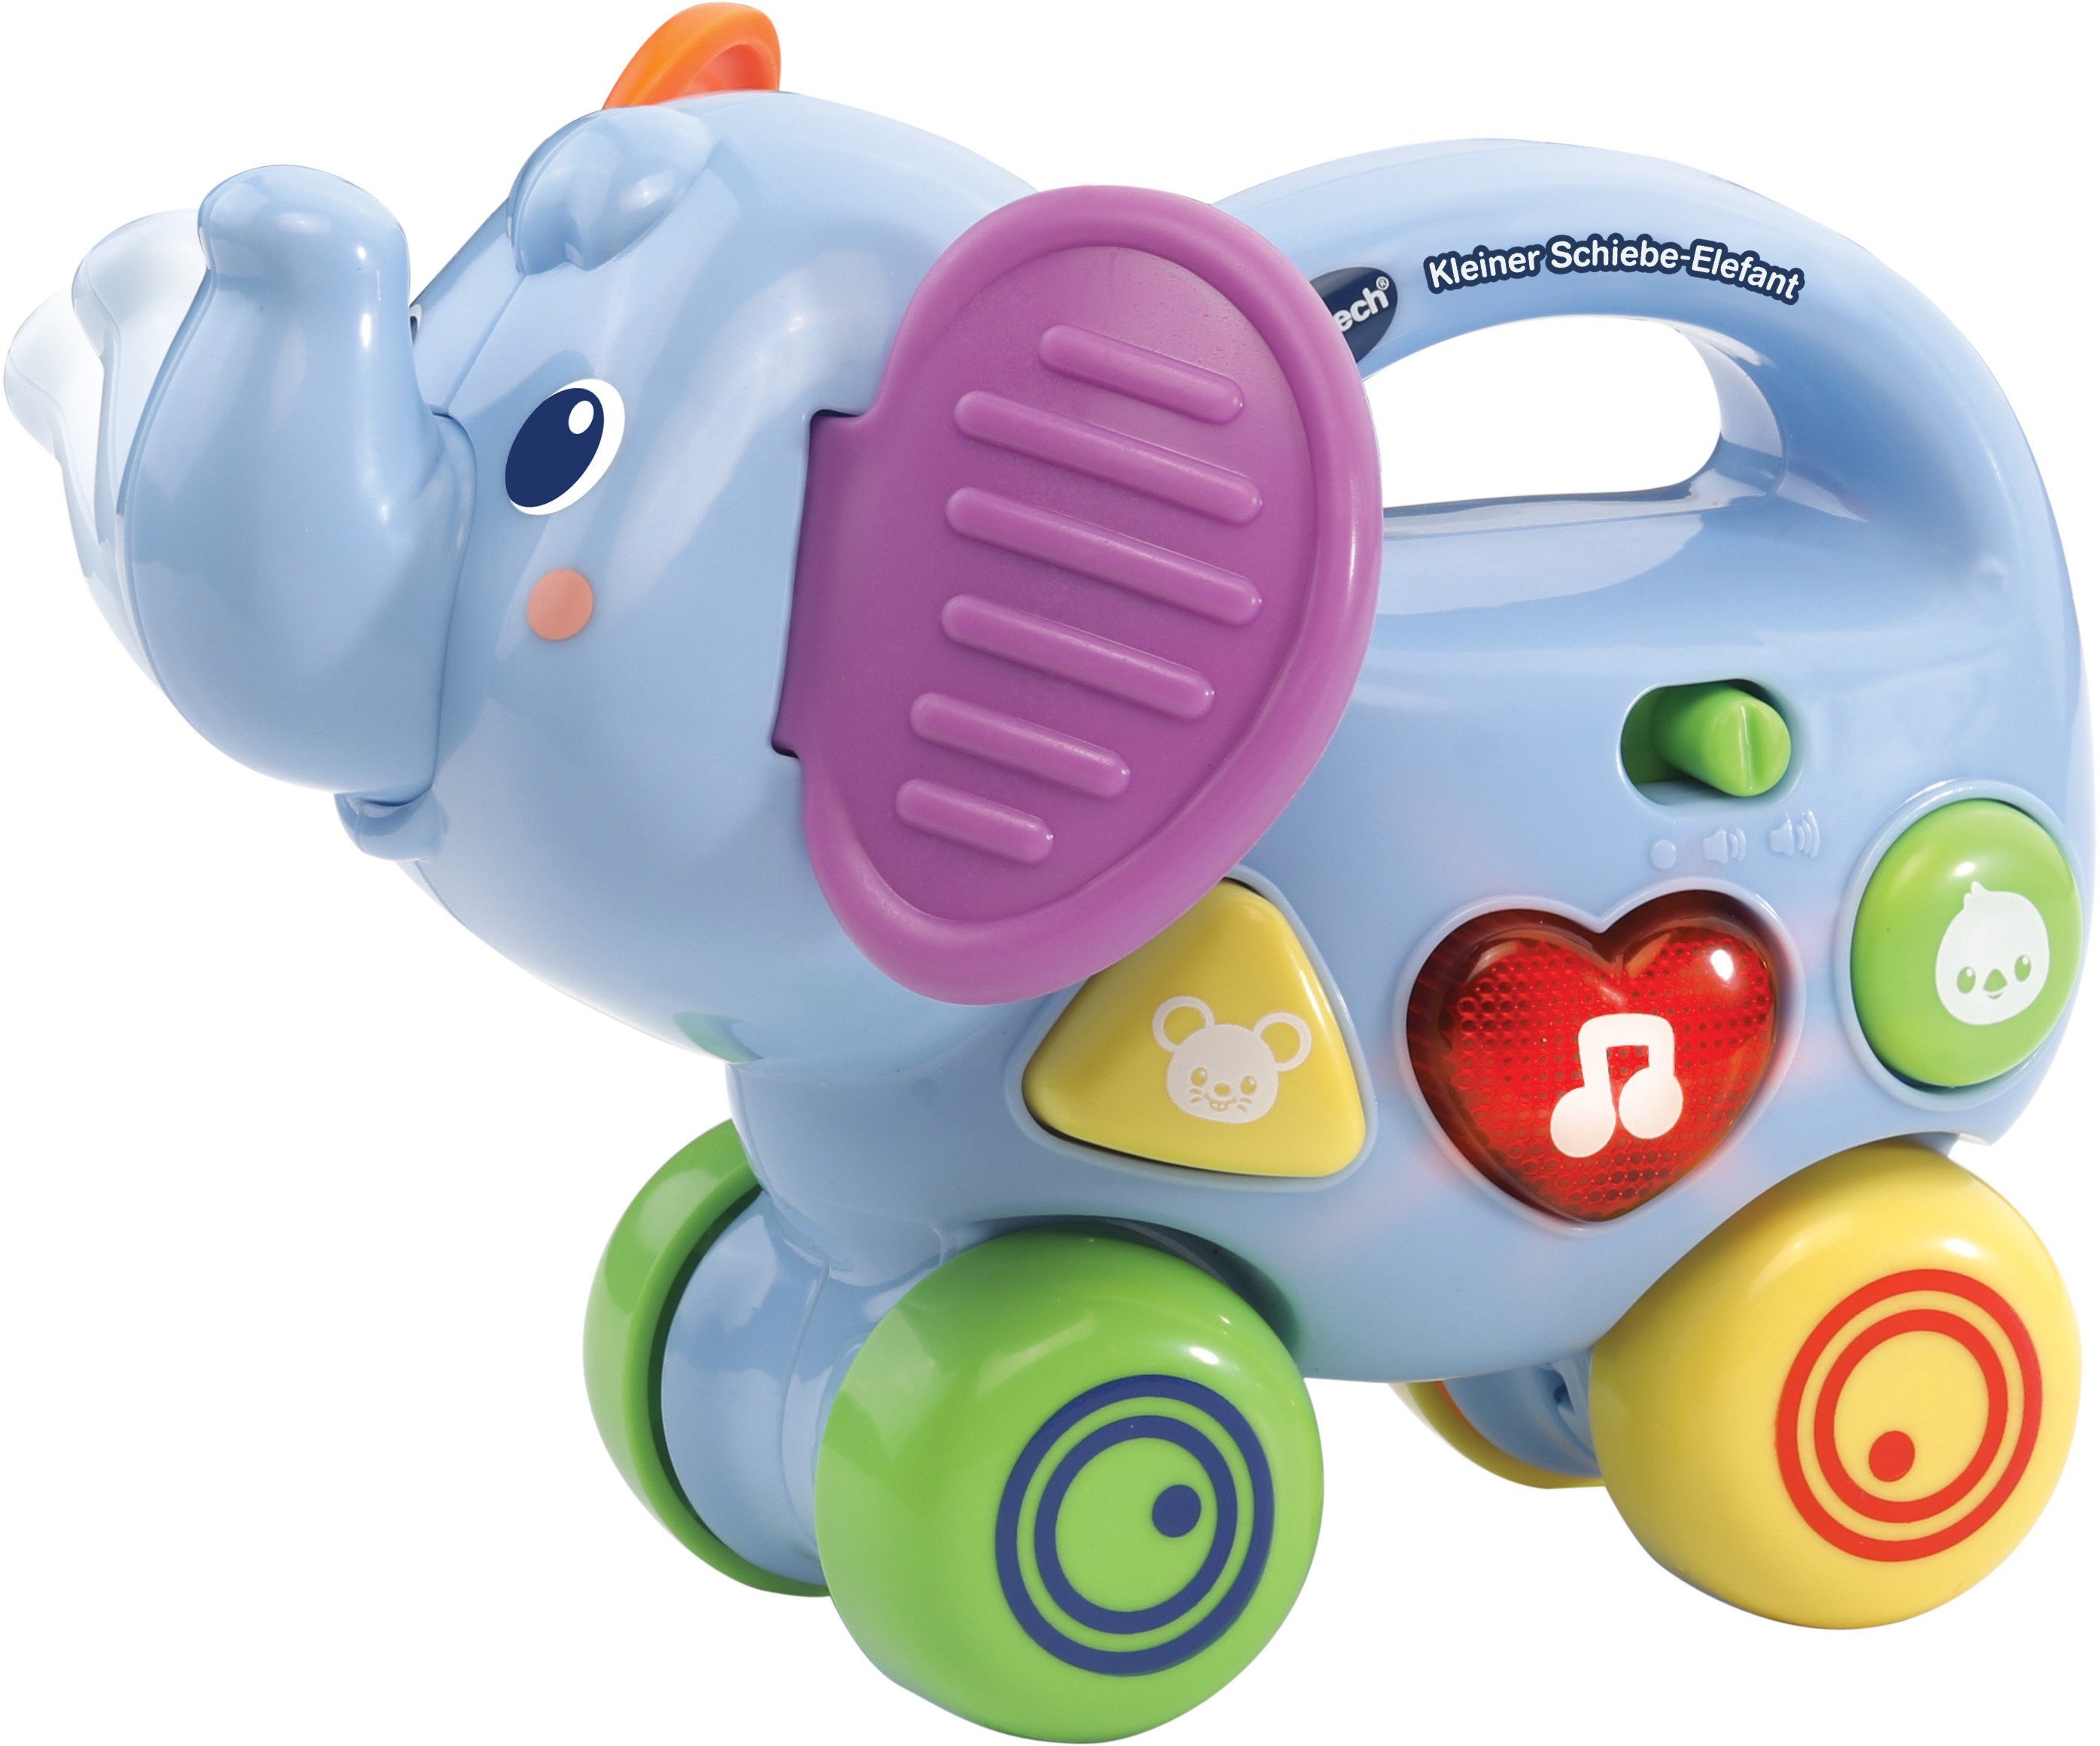 Vtech® Lernspielzeug »VTechBaby, Kleiner Schiebe-Elefant«, mit Sound online  kaufen | OTTO